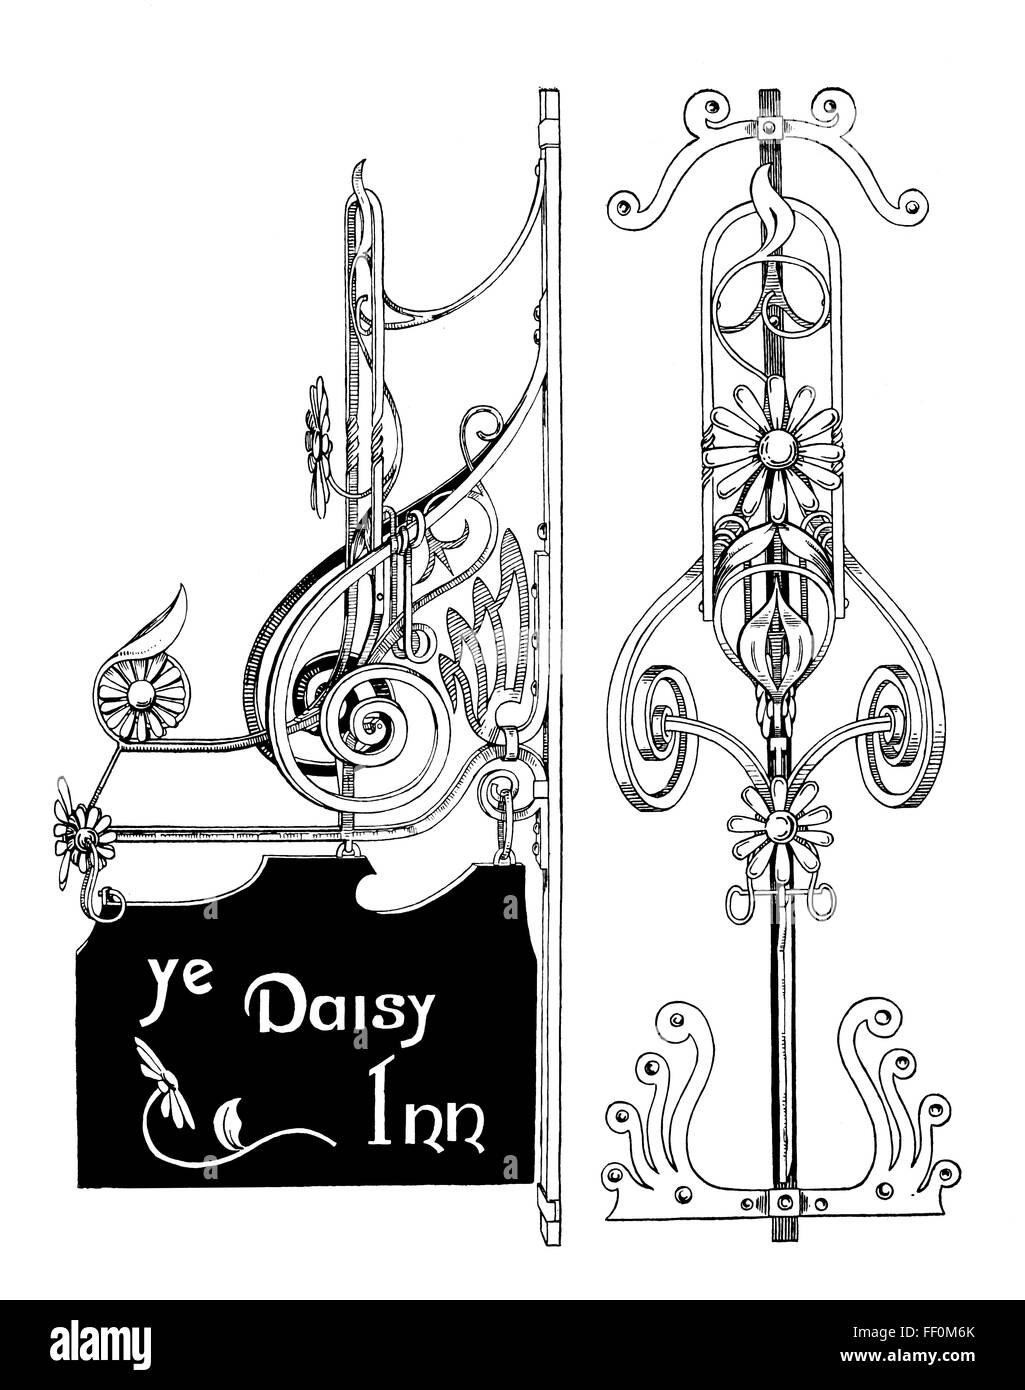 Voi Daisy Inn art nouveau di lamiera pub sign design by Jas Thirtle di Ewell illustrazione di linea dal 1897 Studio Magazine Foto Stock